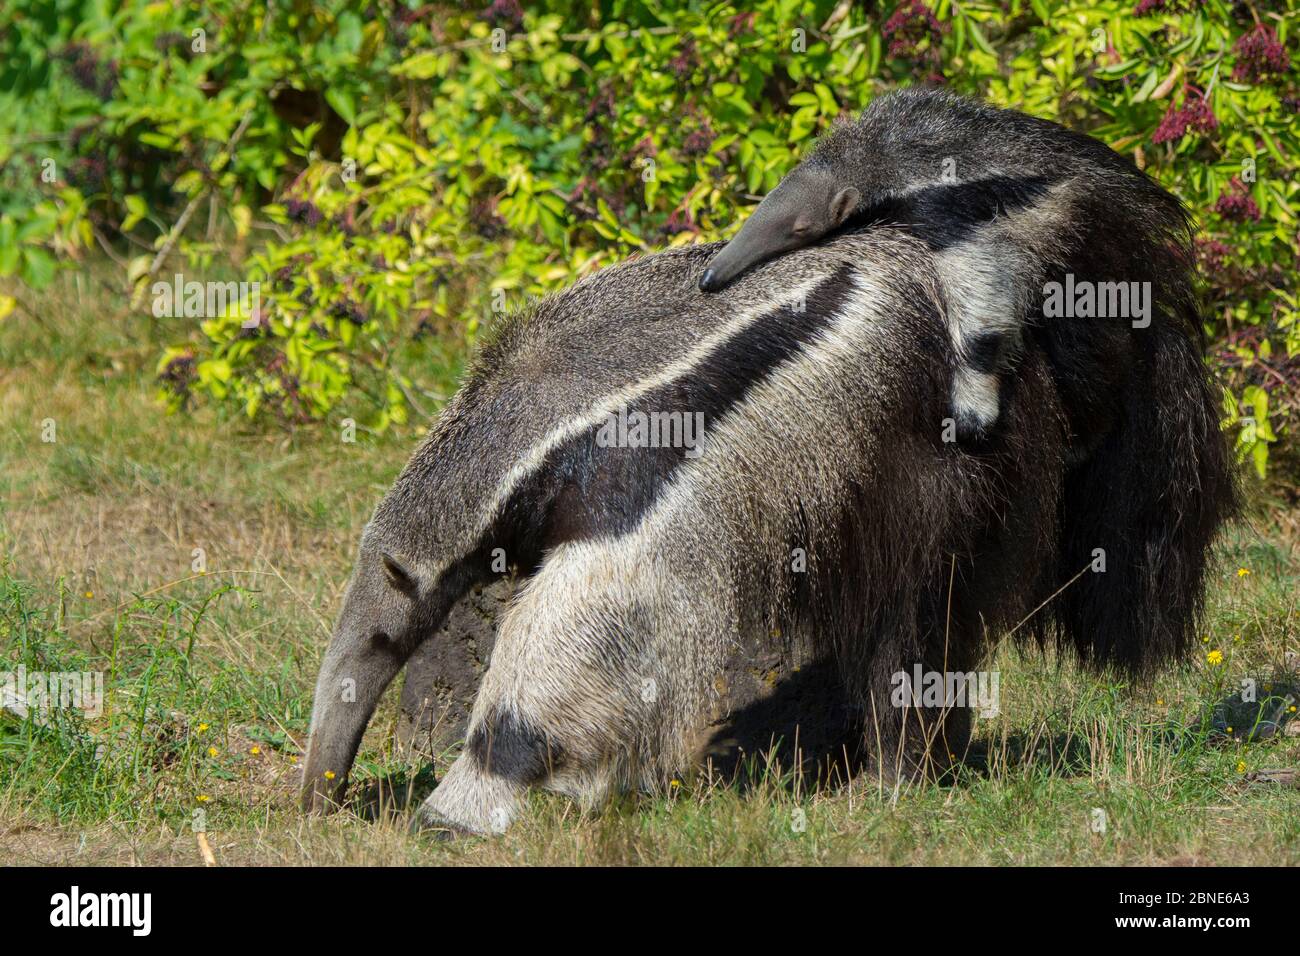 Giant anteater (Myrmecophaga tridactyla) che trasportano il bambino sulla schiena, captive, avviene in America Centrale e America del Sud. Le specie vulnerabili. Foto Stock